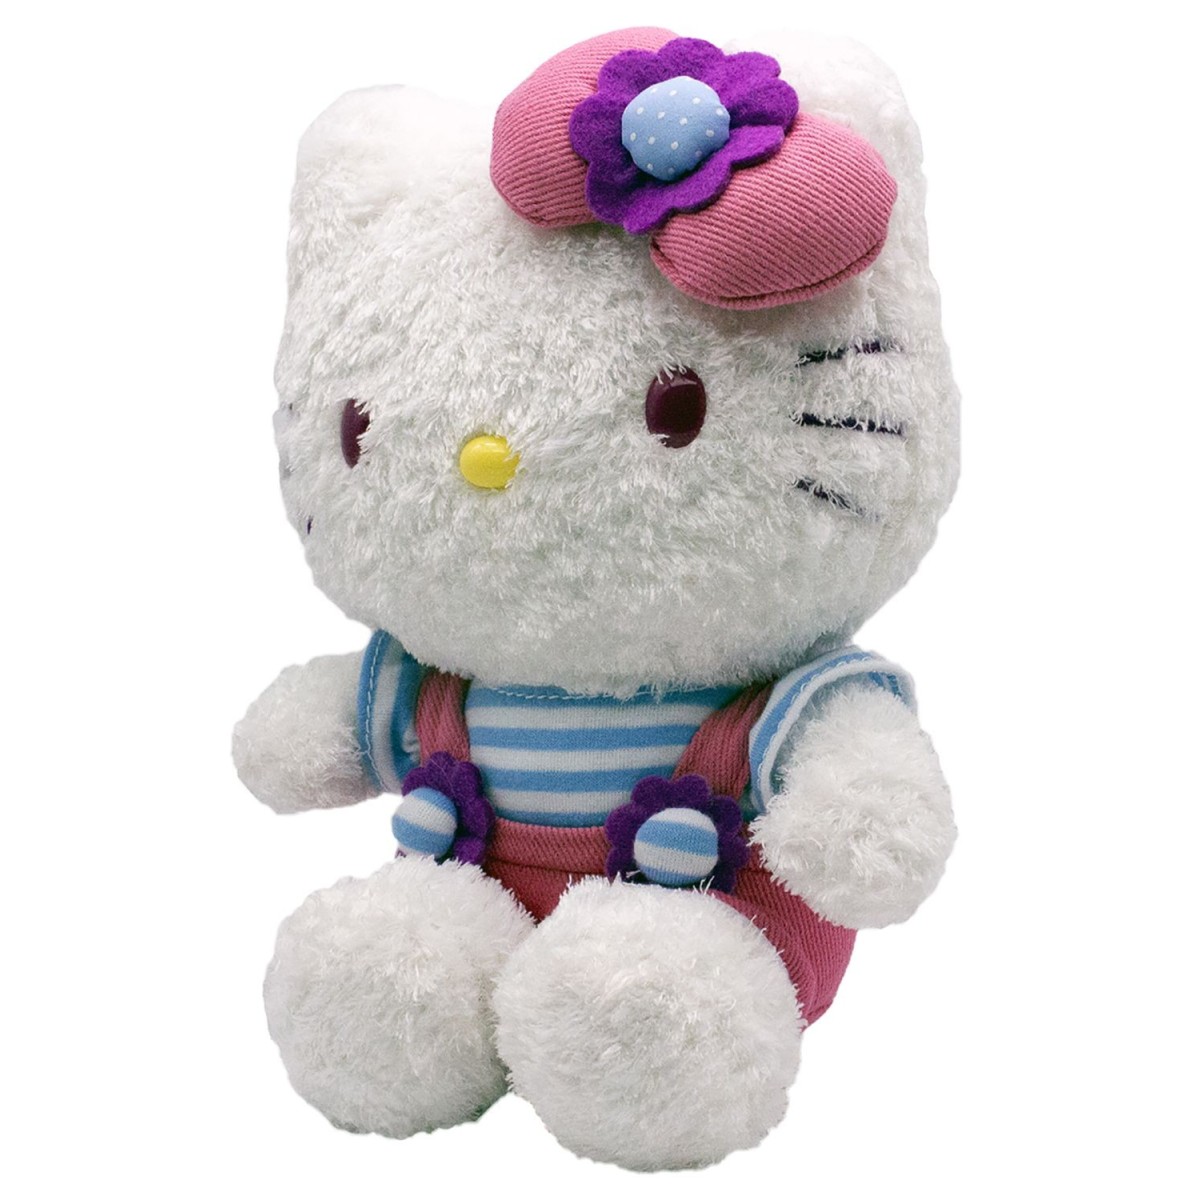 Peluche Sanrio Hello Kitty cm 23 Fiocco rosa 14882-2